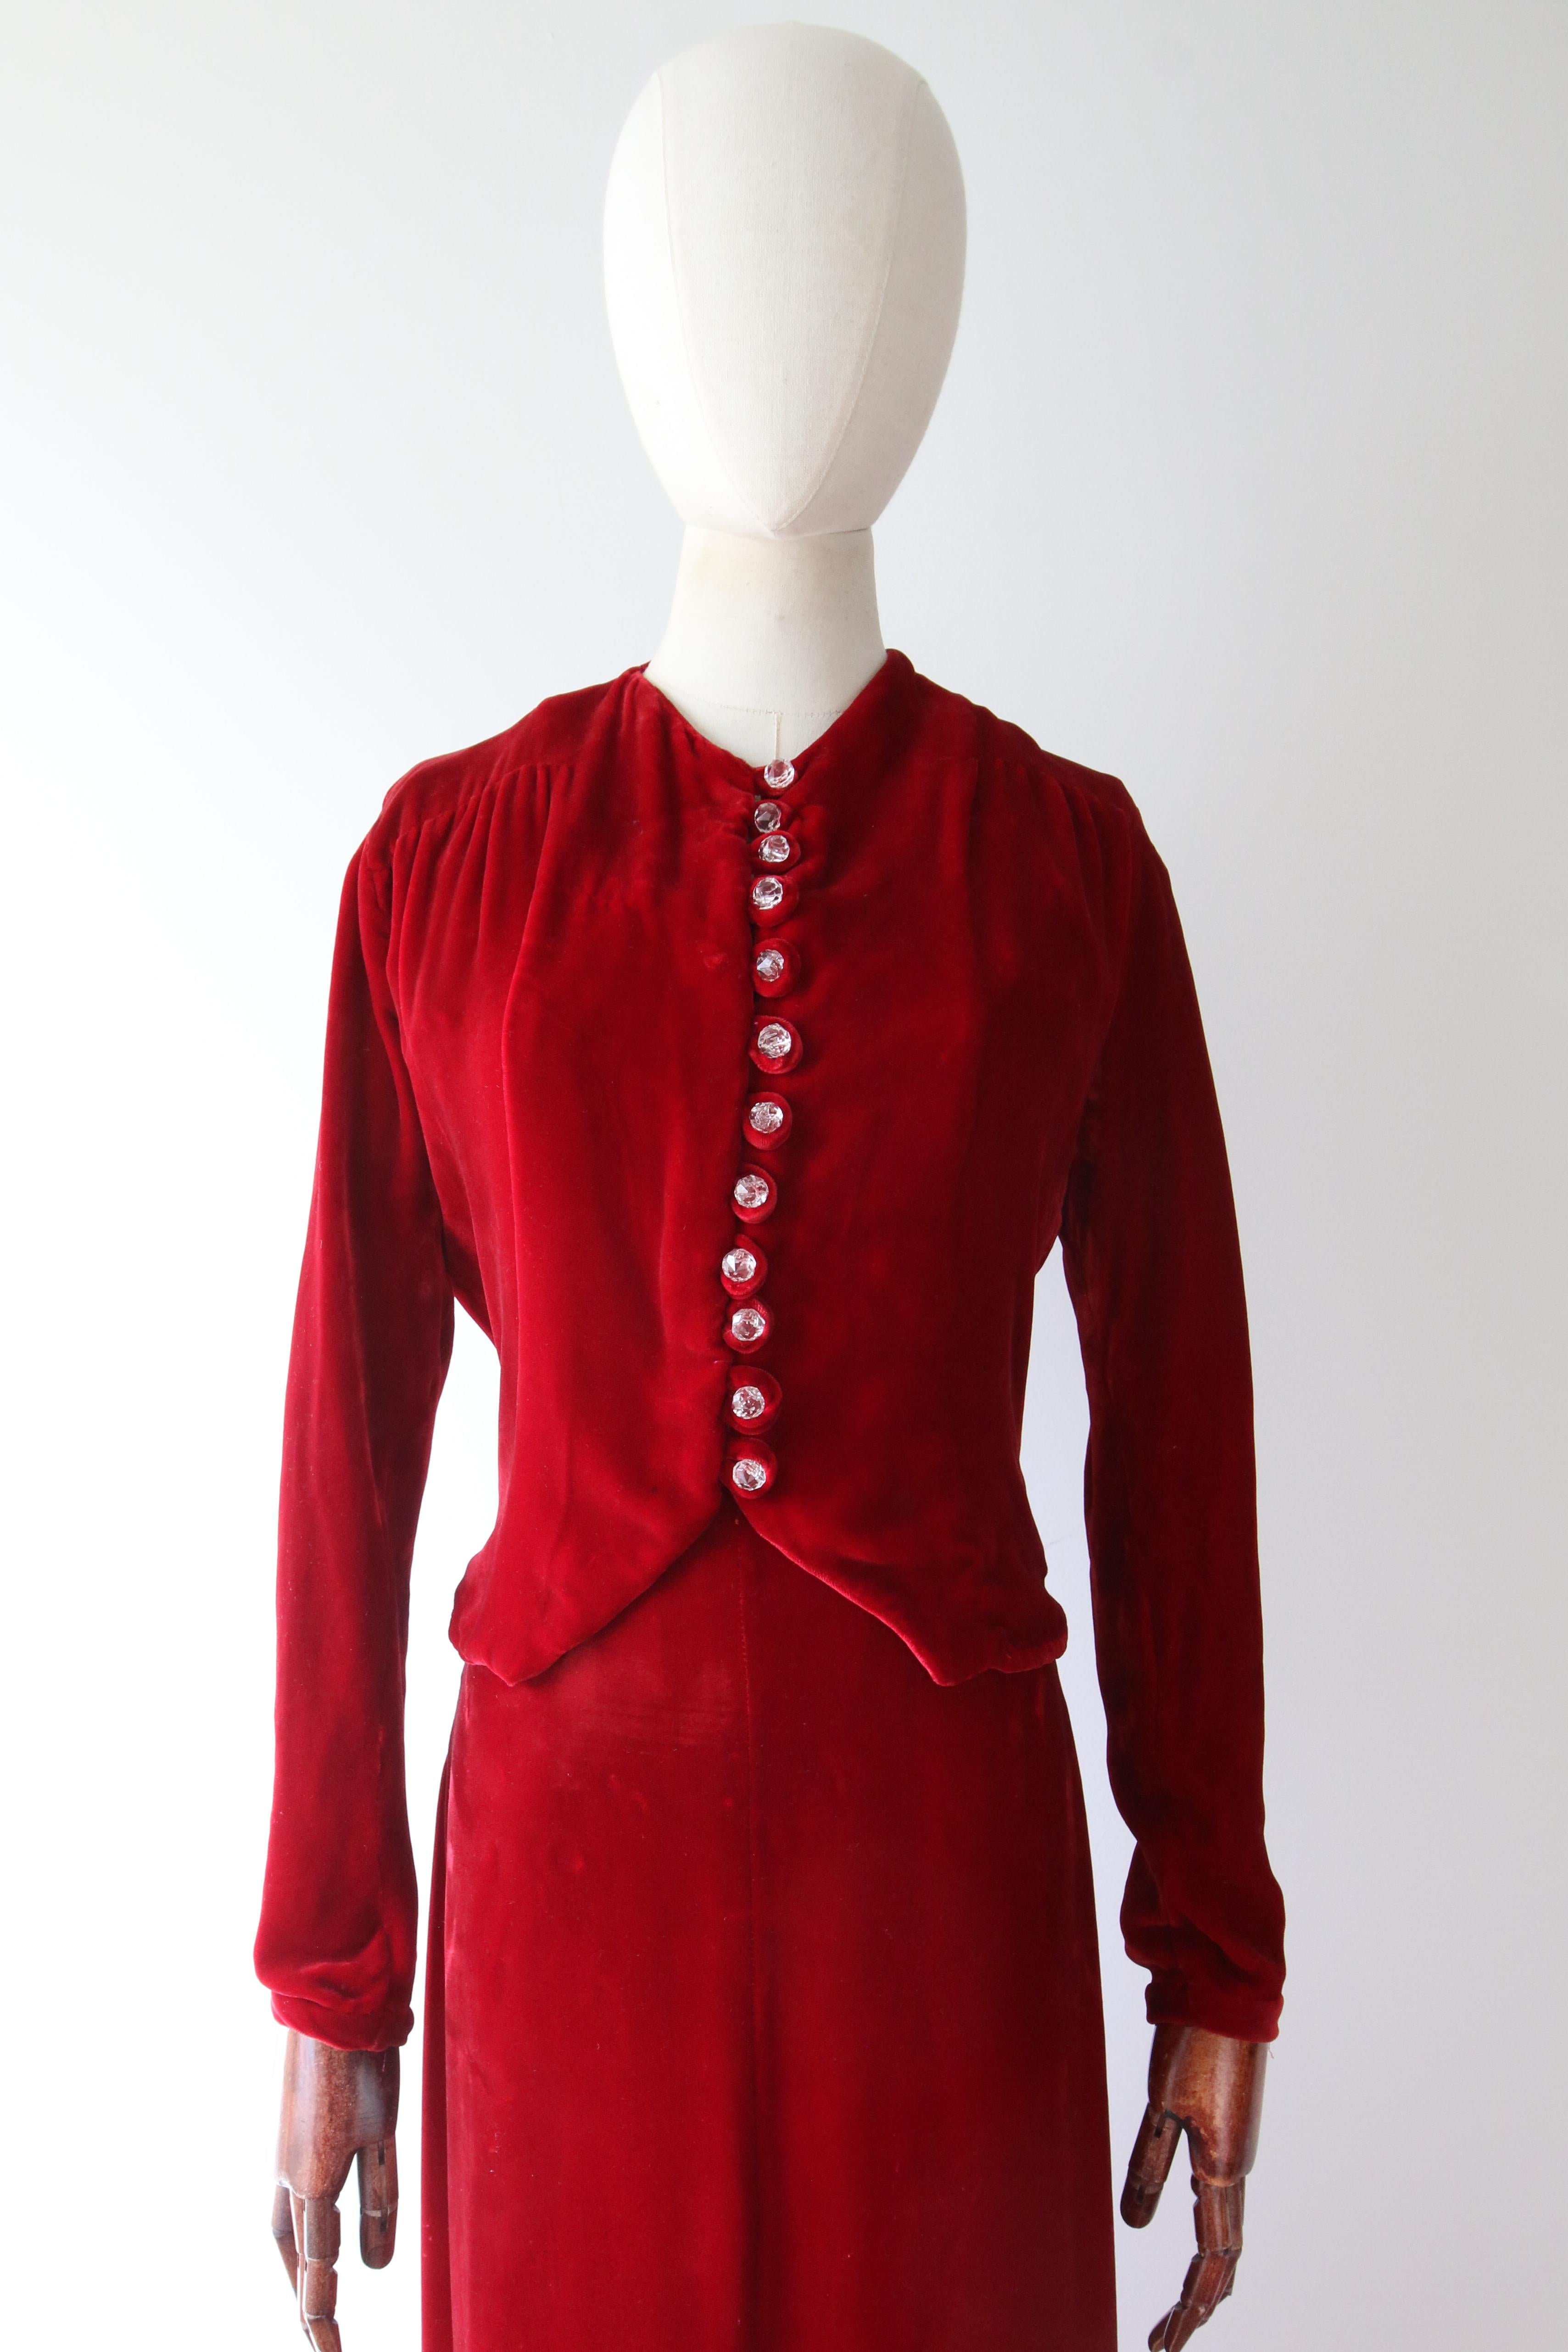 Vintage 1930's red velvet dress and jacket 1930's bias cut UK 6- 8 US 2-4 For Sale 6